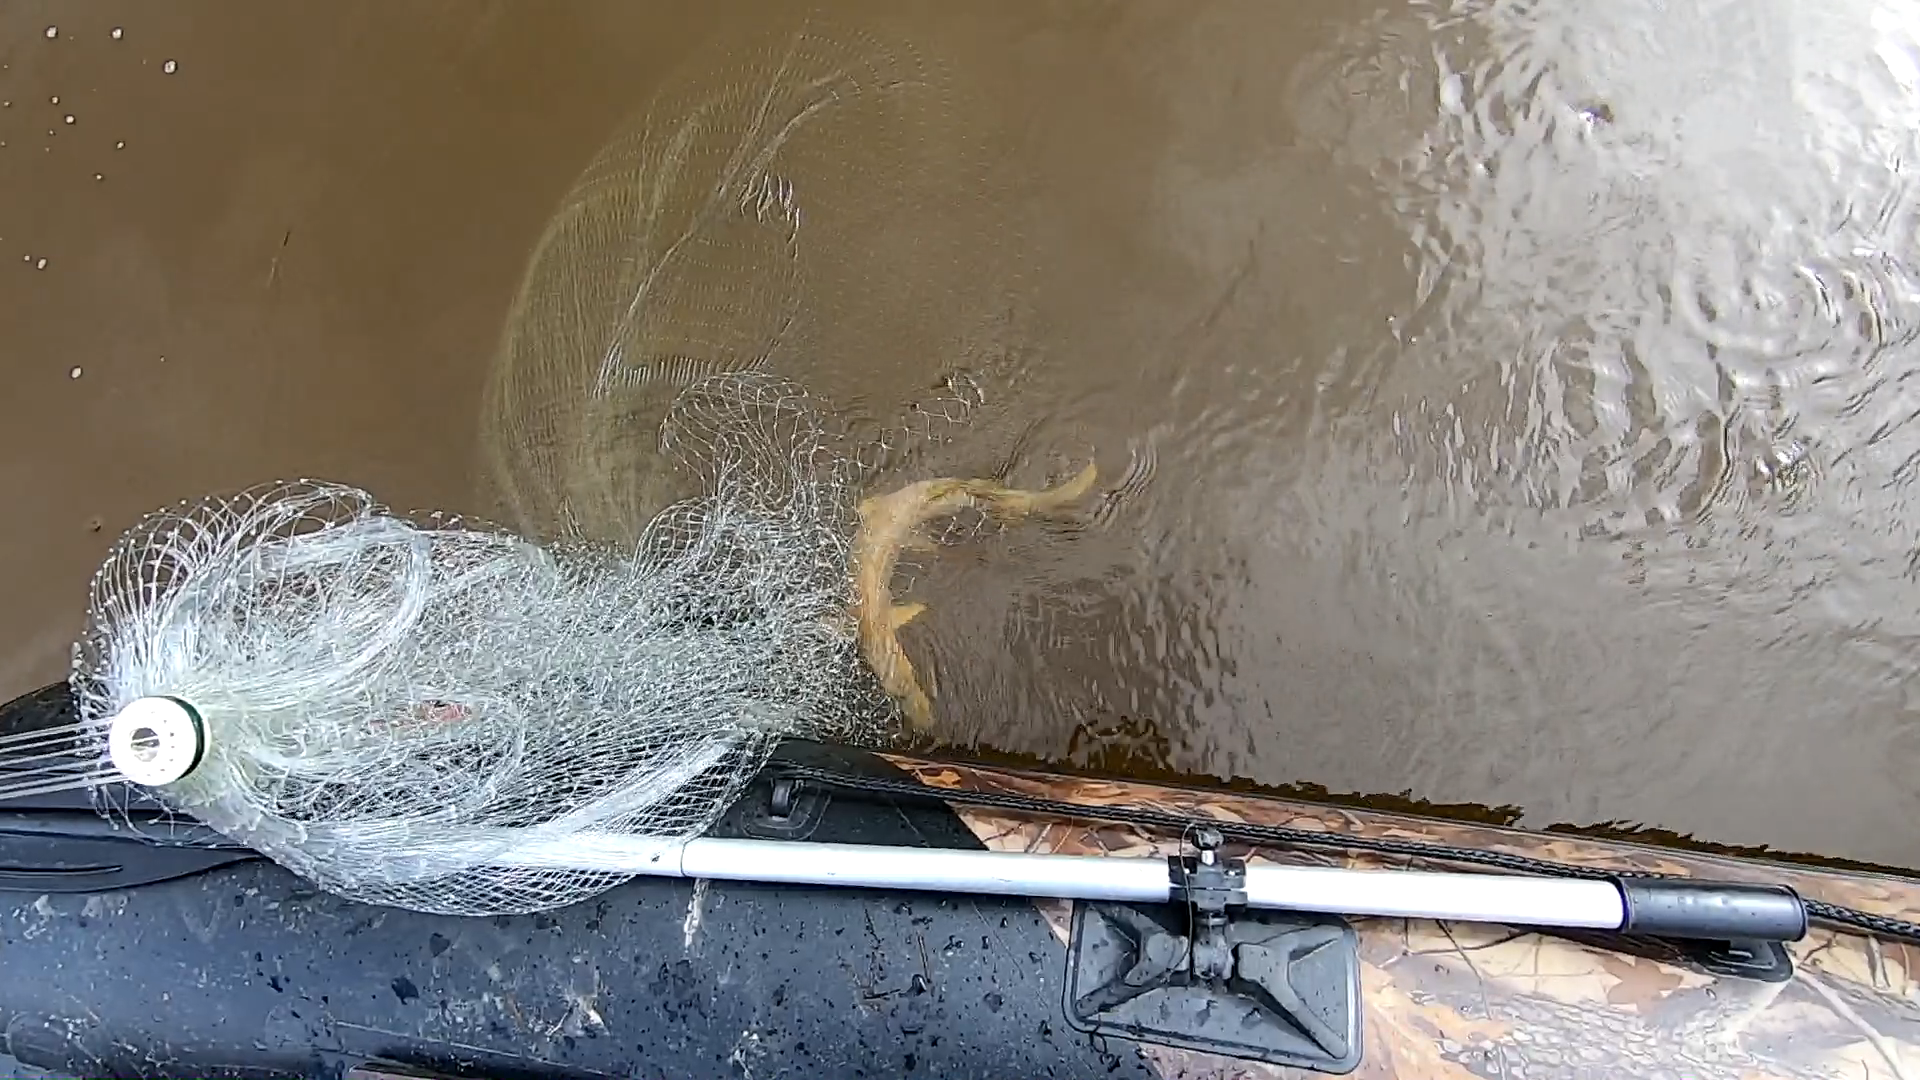 Кастинговая ловля рыбы. Рыбалка кастинговой сетью на реках. Рыбалка на кастинговую сеть видео. Телевизор рыболовный. Заброс кастинговой сети.